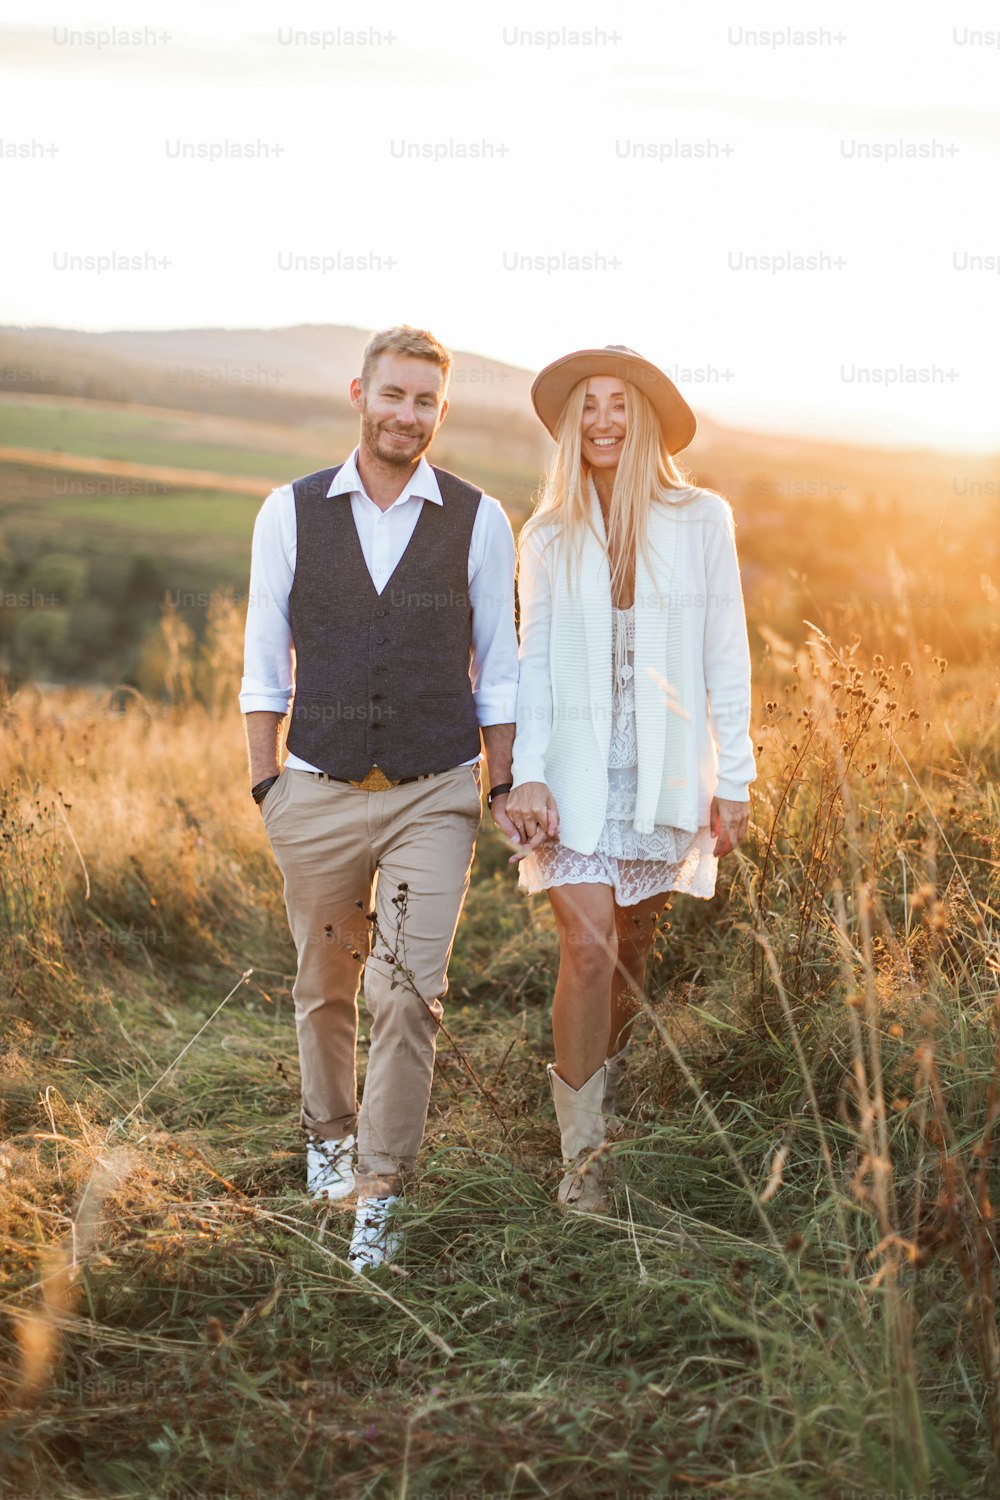 Bel homme élégant en chemise, gilet et pantalon et jolie femme bohème en robe, veste et chapeau marchant dans le champ avec des balles de paille, se tenant la main et souriant. Soirée d’été, coucher de soleil.